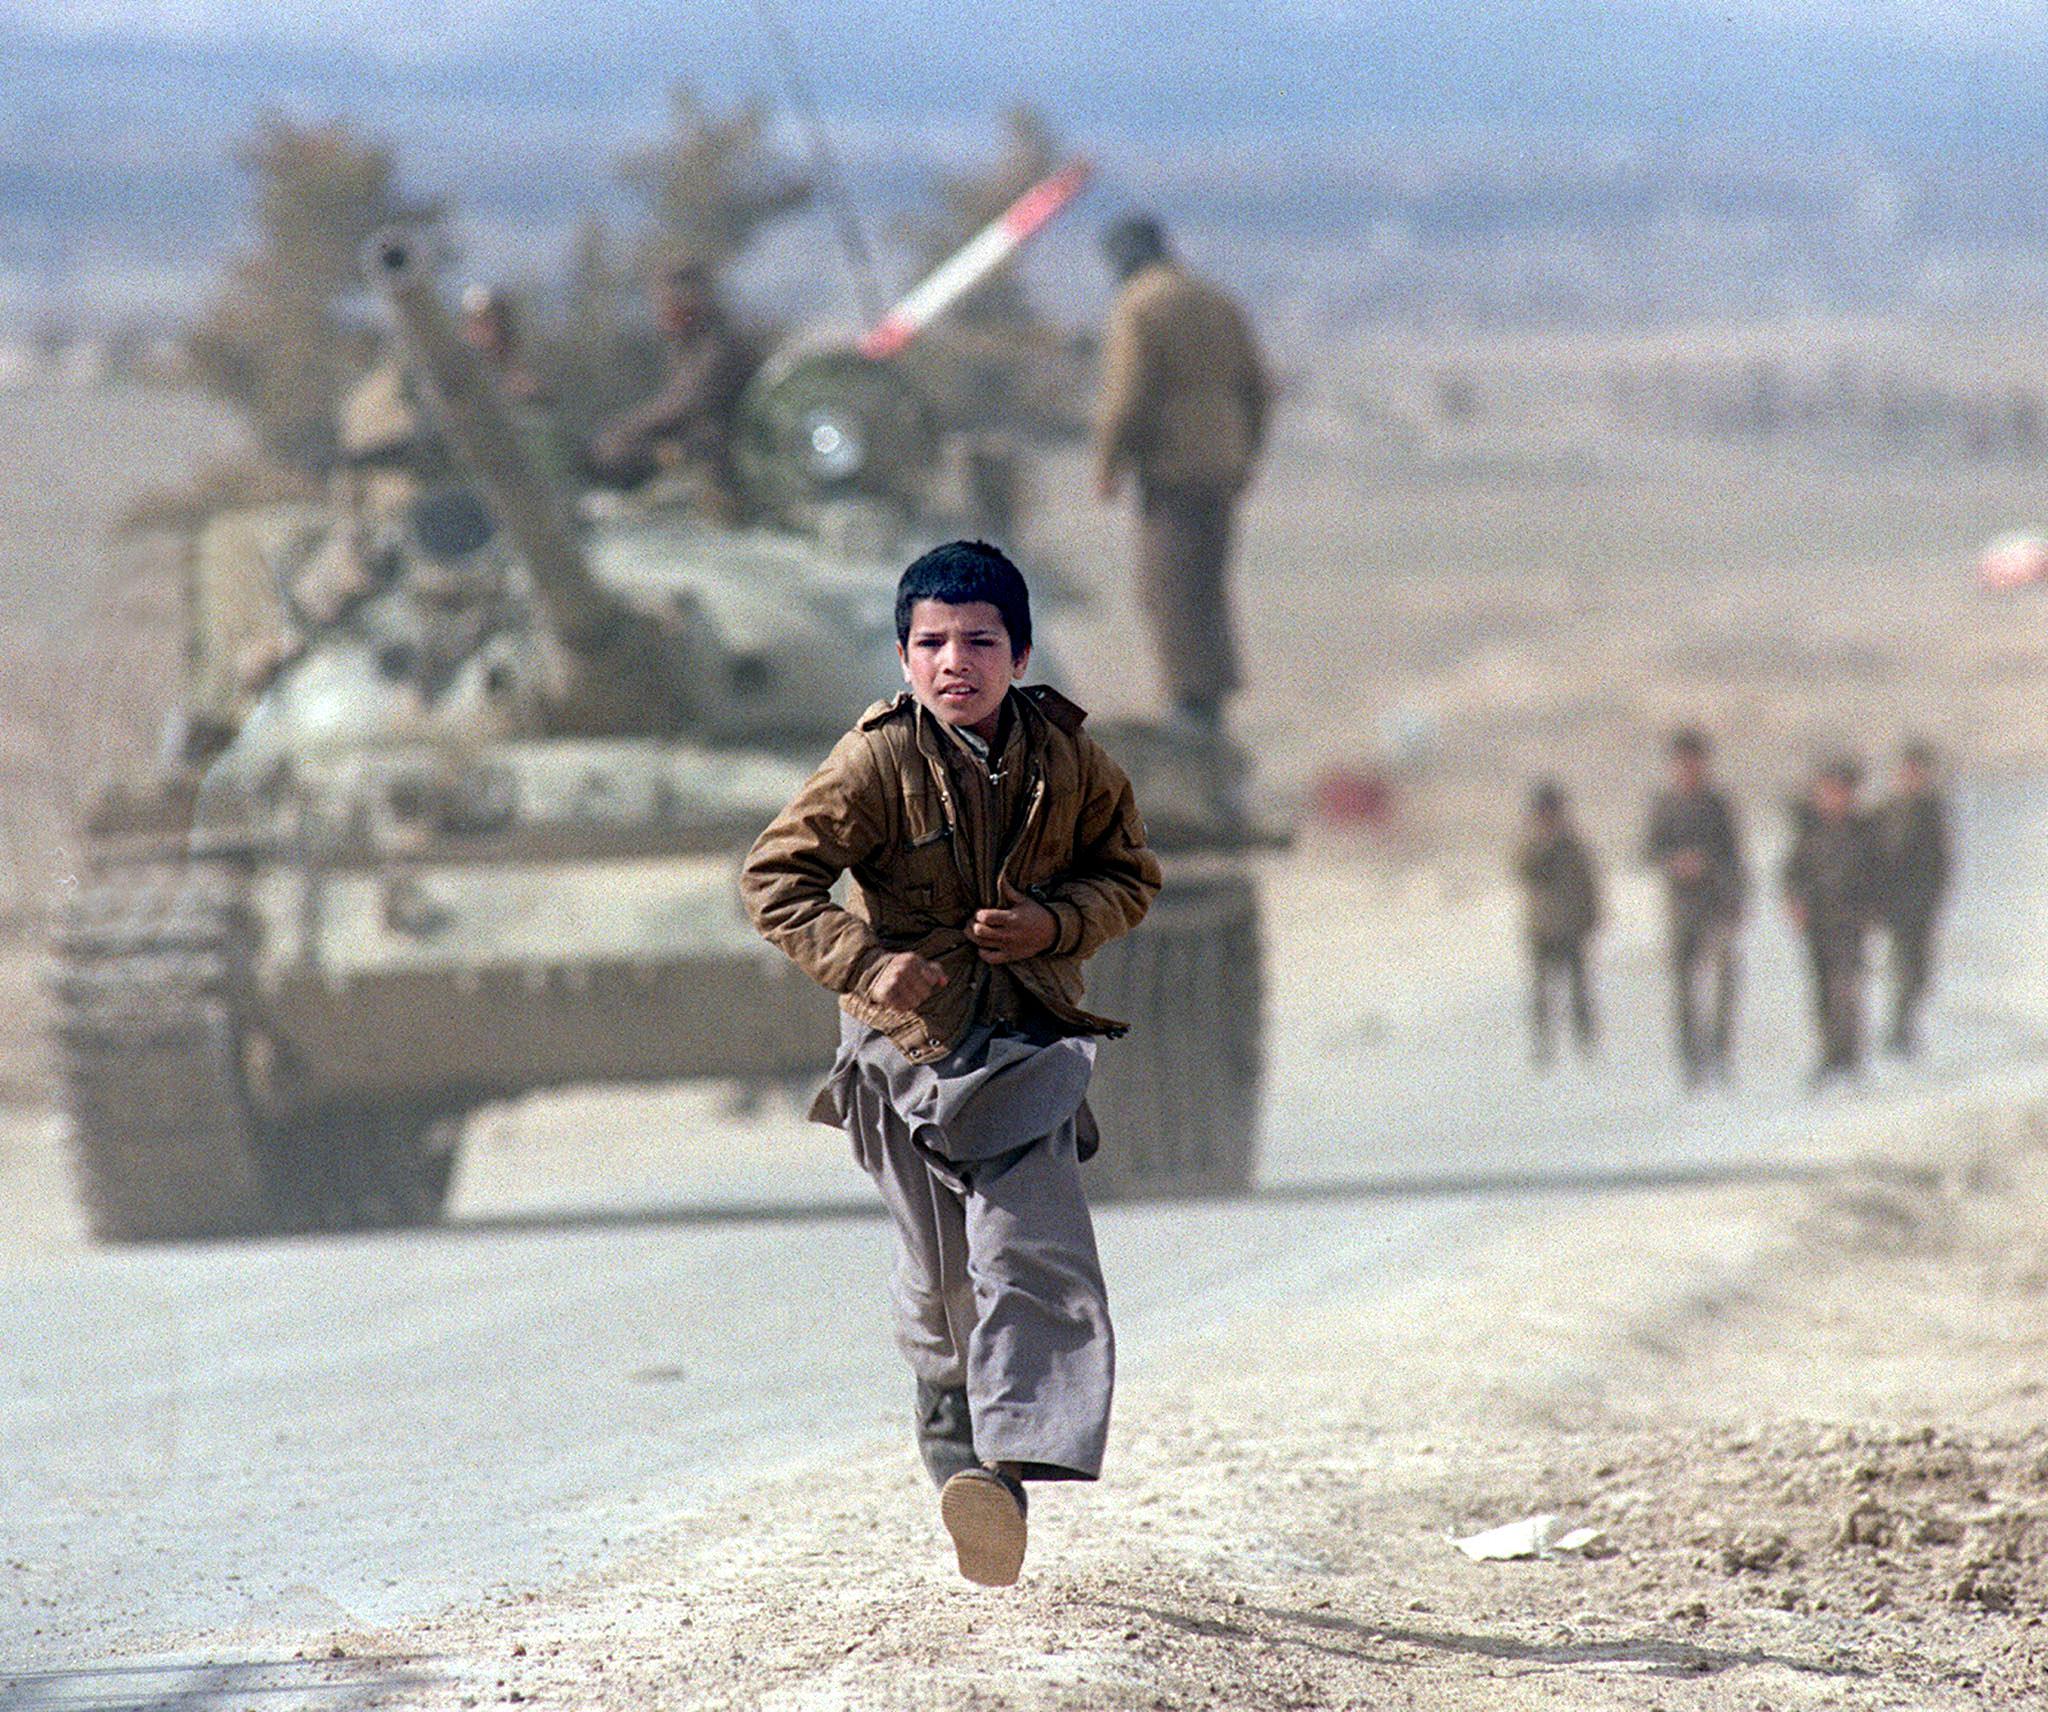 chłopiec biegnie po ulicy, w tle sowiecki czołg